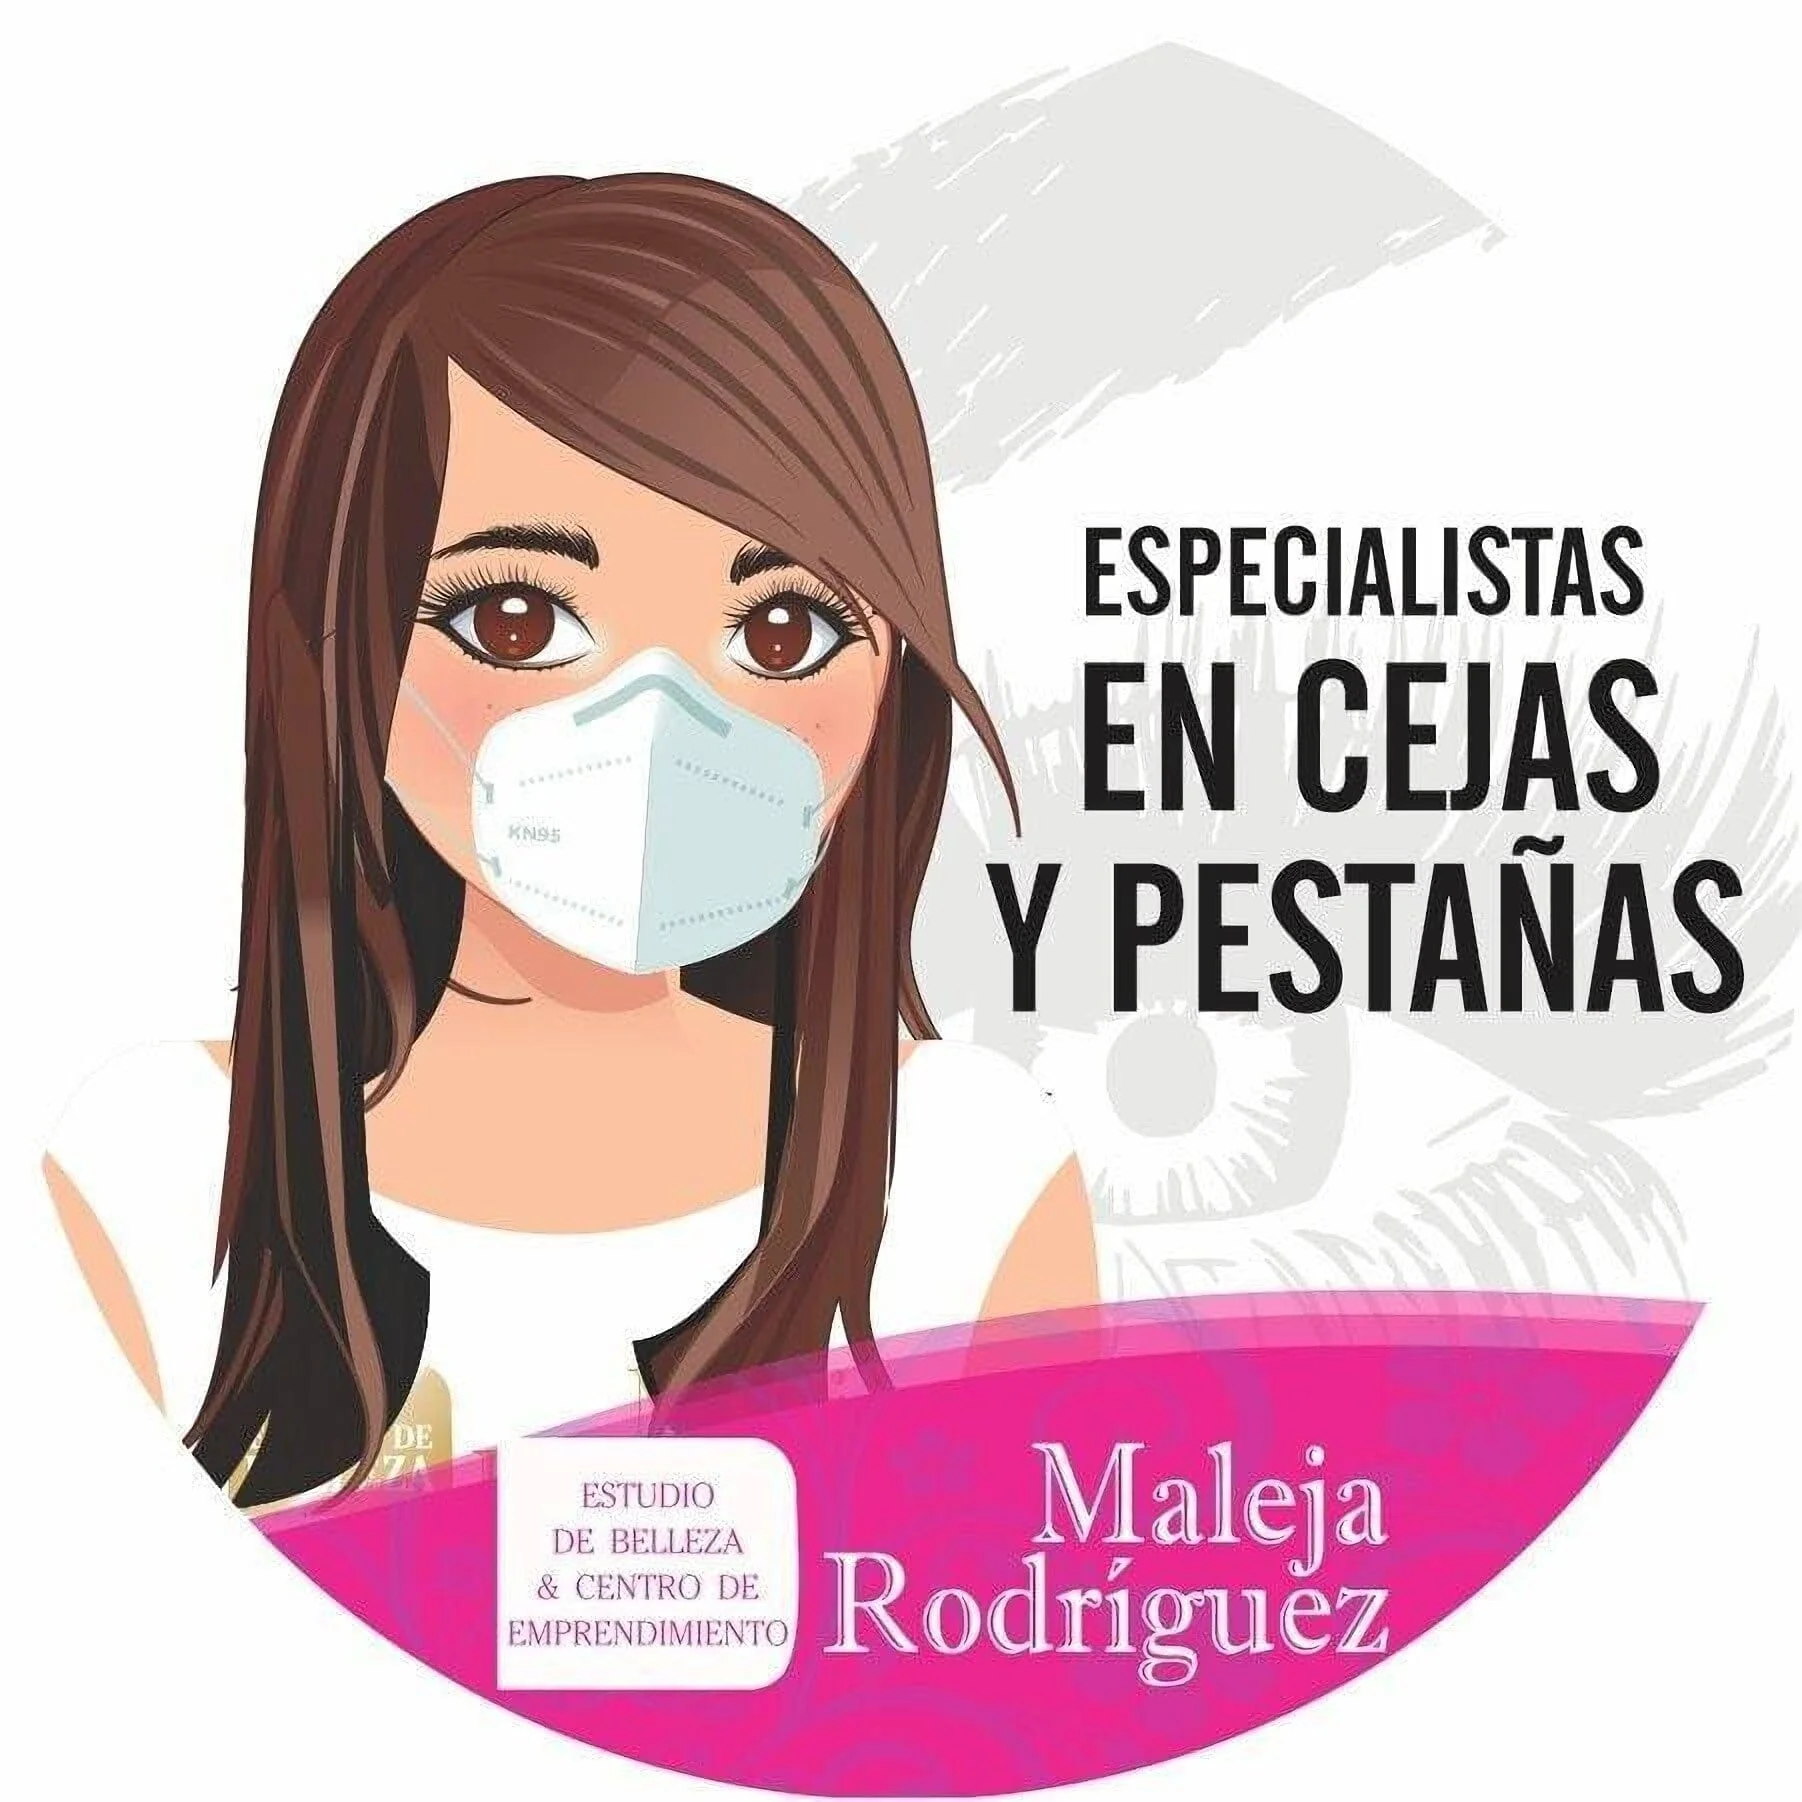 Estudio de belleza y centro de Emprendimiento Maleja Rodriguez-120